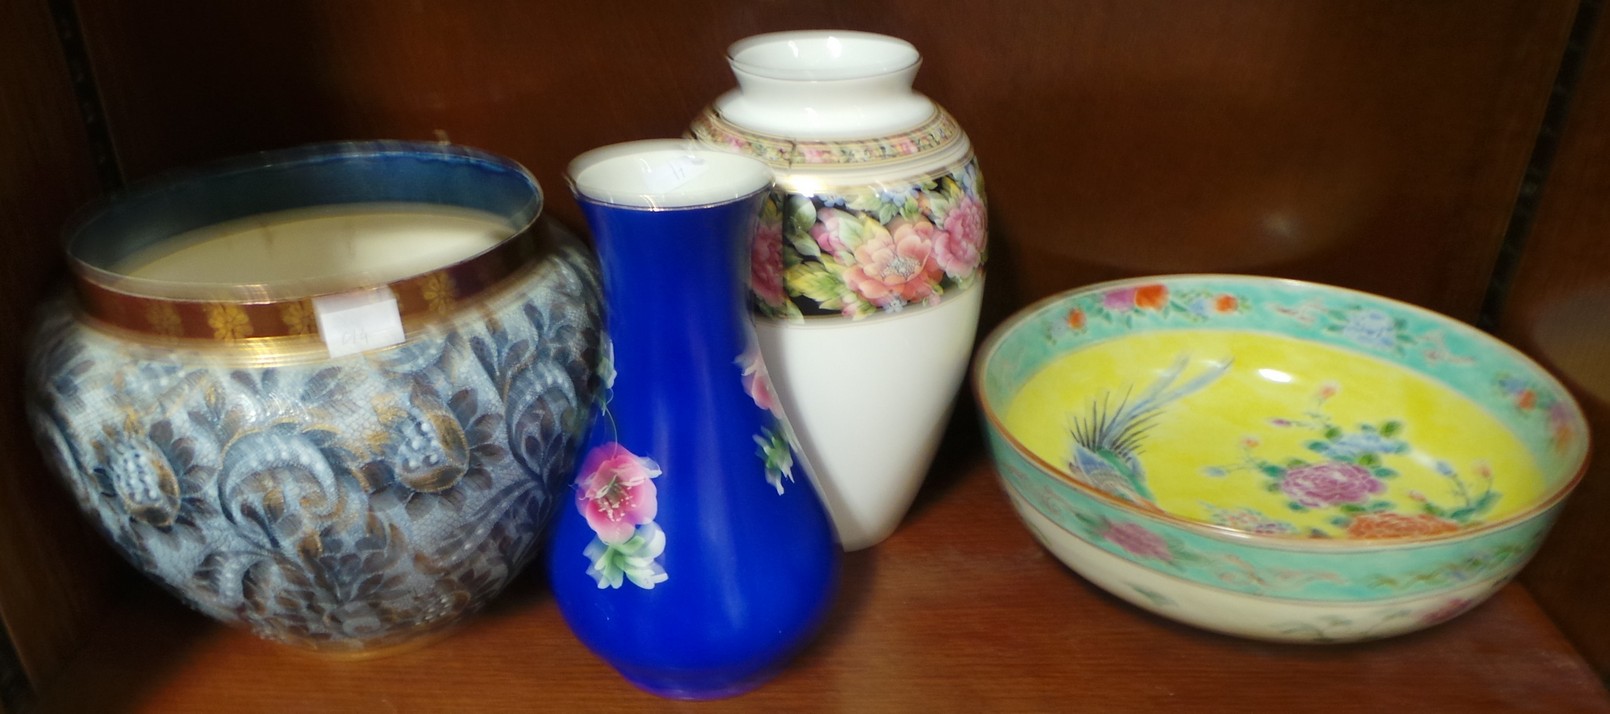 Doulton Jardinière, Wedgewood Vase, Nippon Fruit Bowl, and Blue Floral Vase